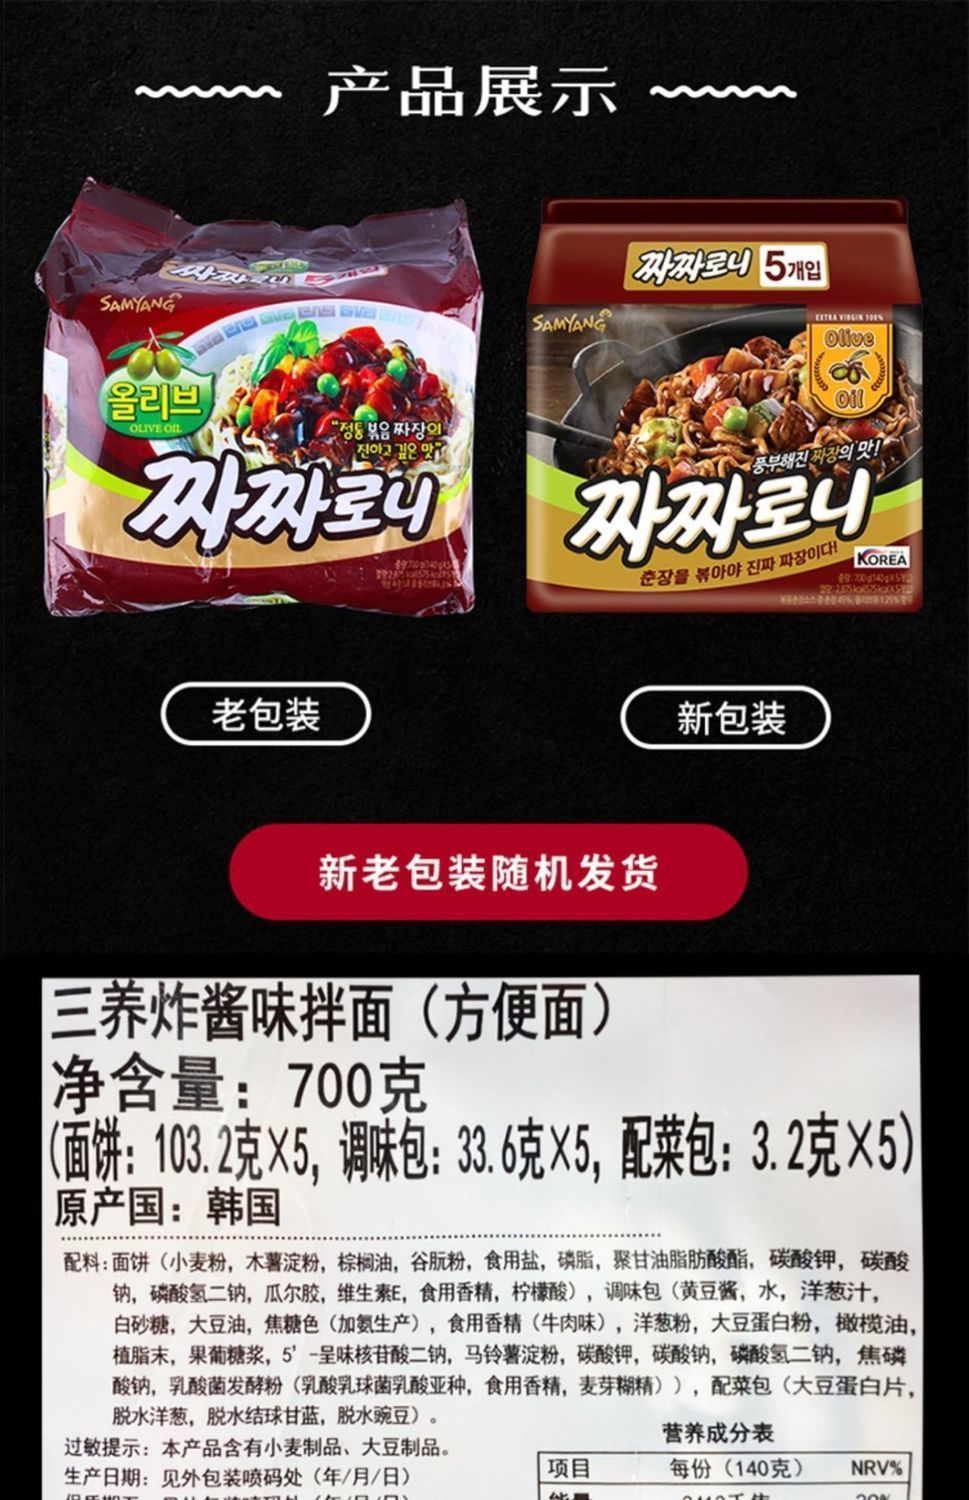 韩国三养火鸡面炸酱味速食泡面拉面干拌面爆款零食韩式方便面5包